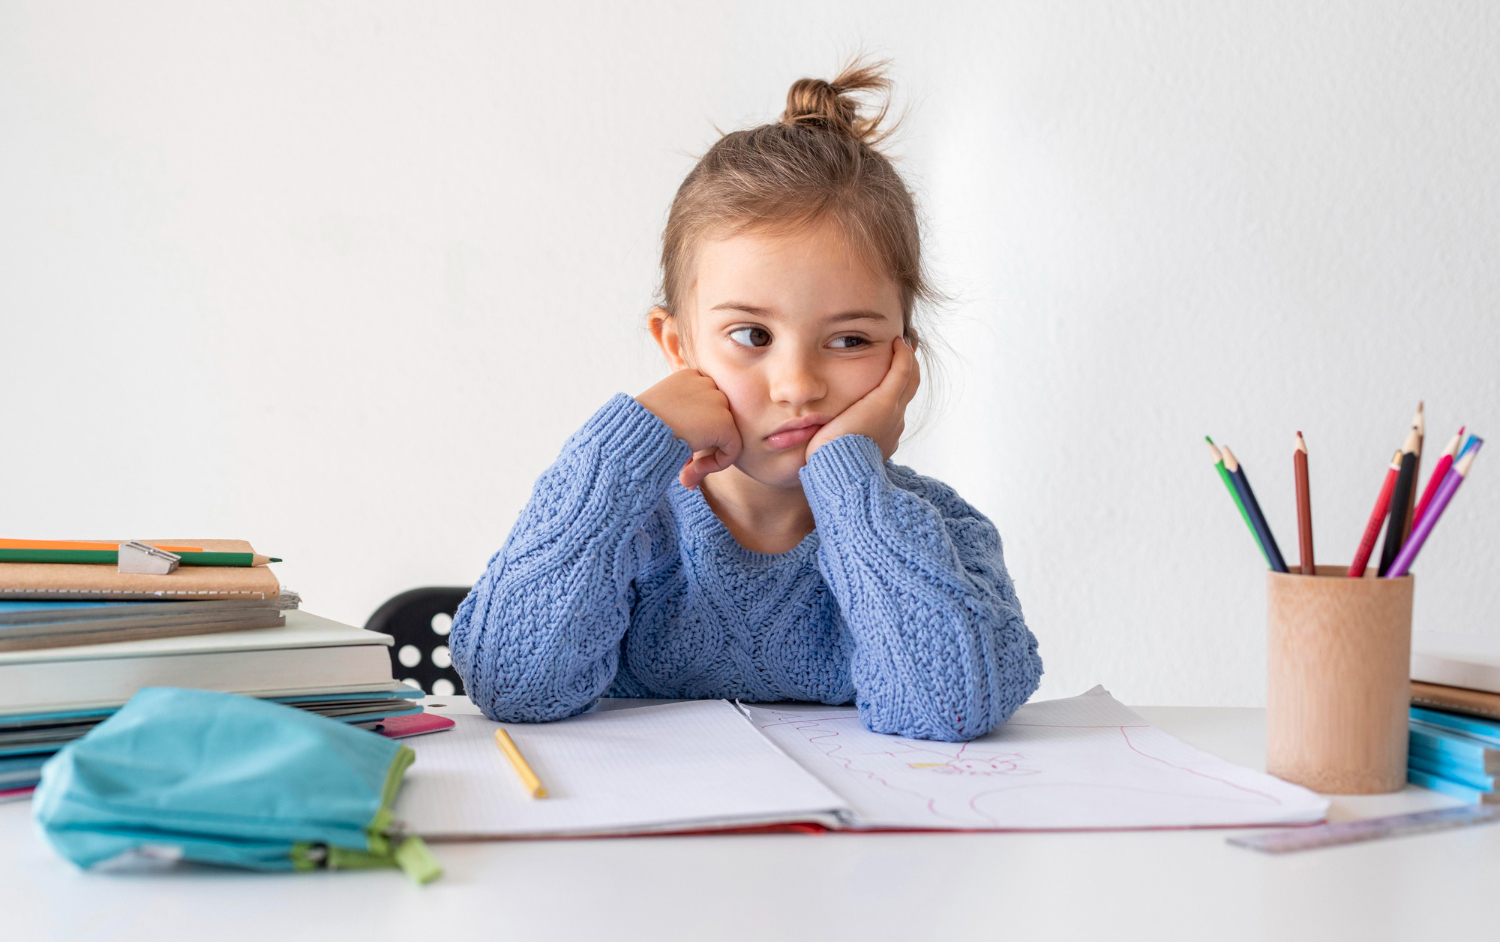 Căng thẳng stress ở trẻ: Cha mẹ đừng chủ quan xem nhẹ!